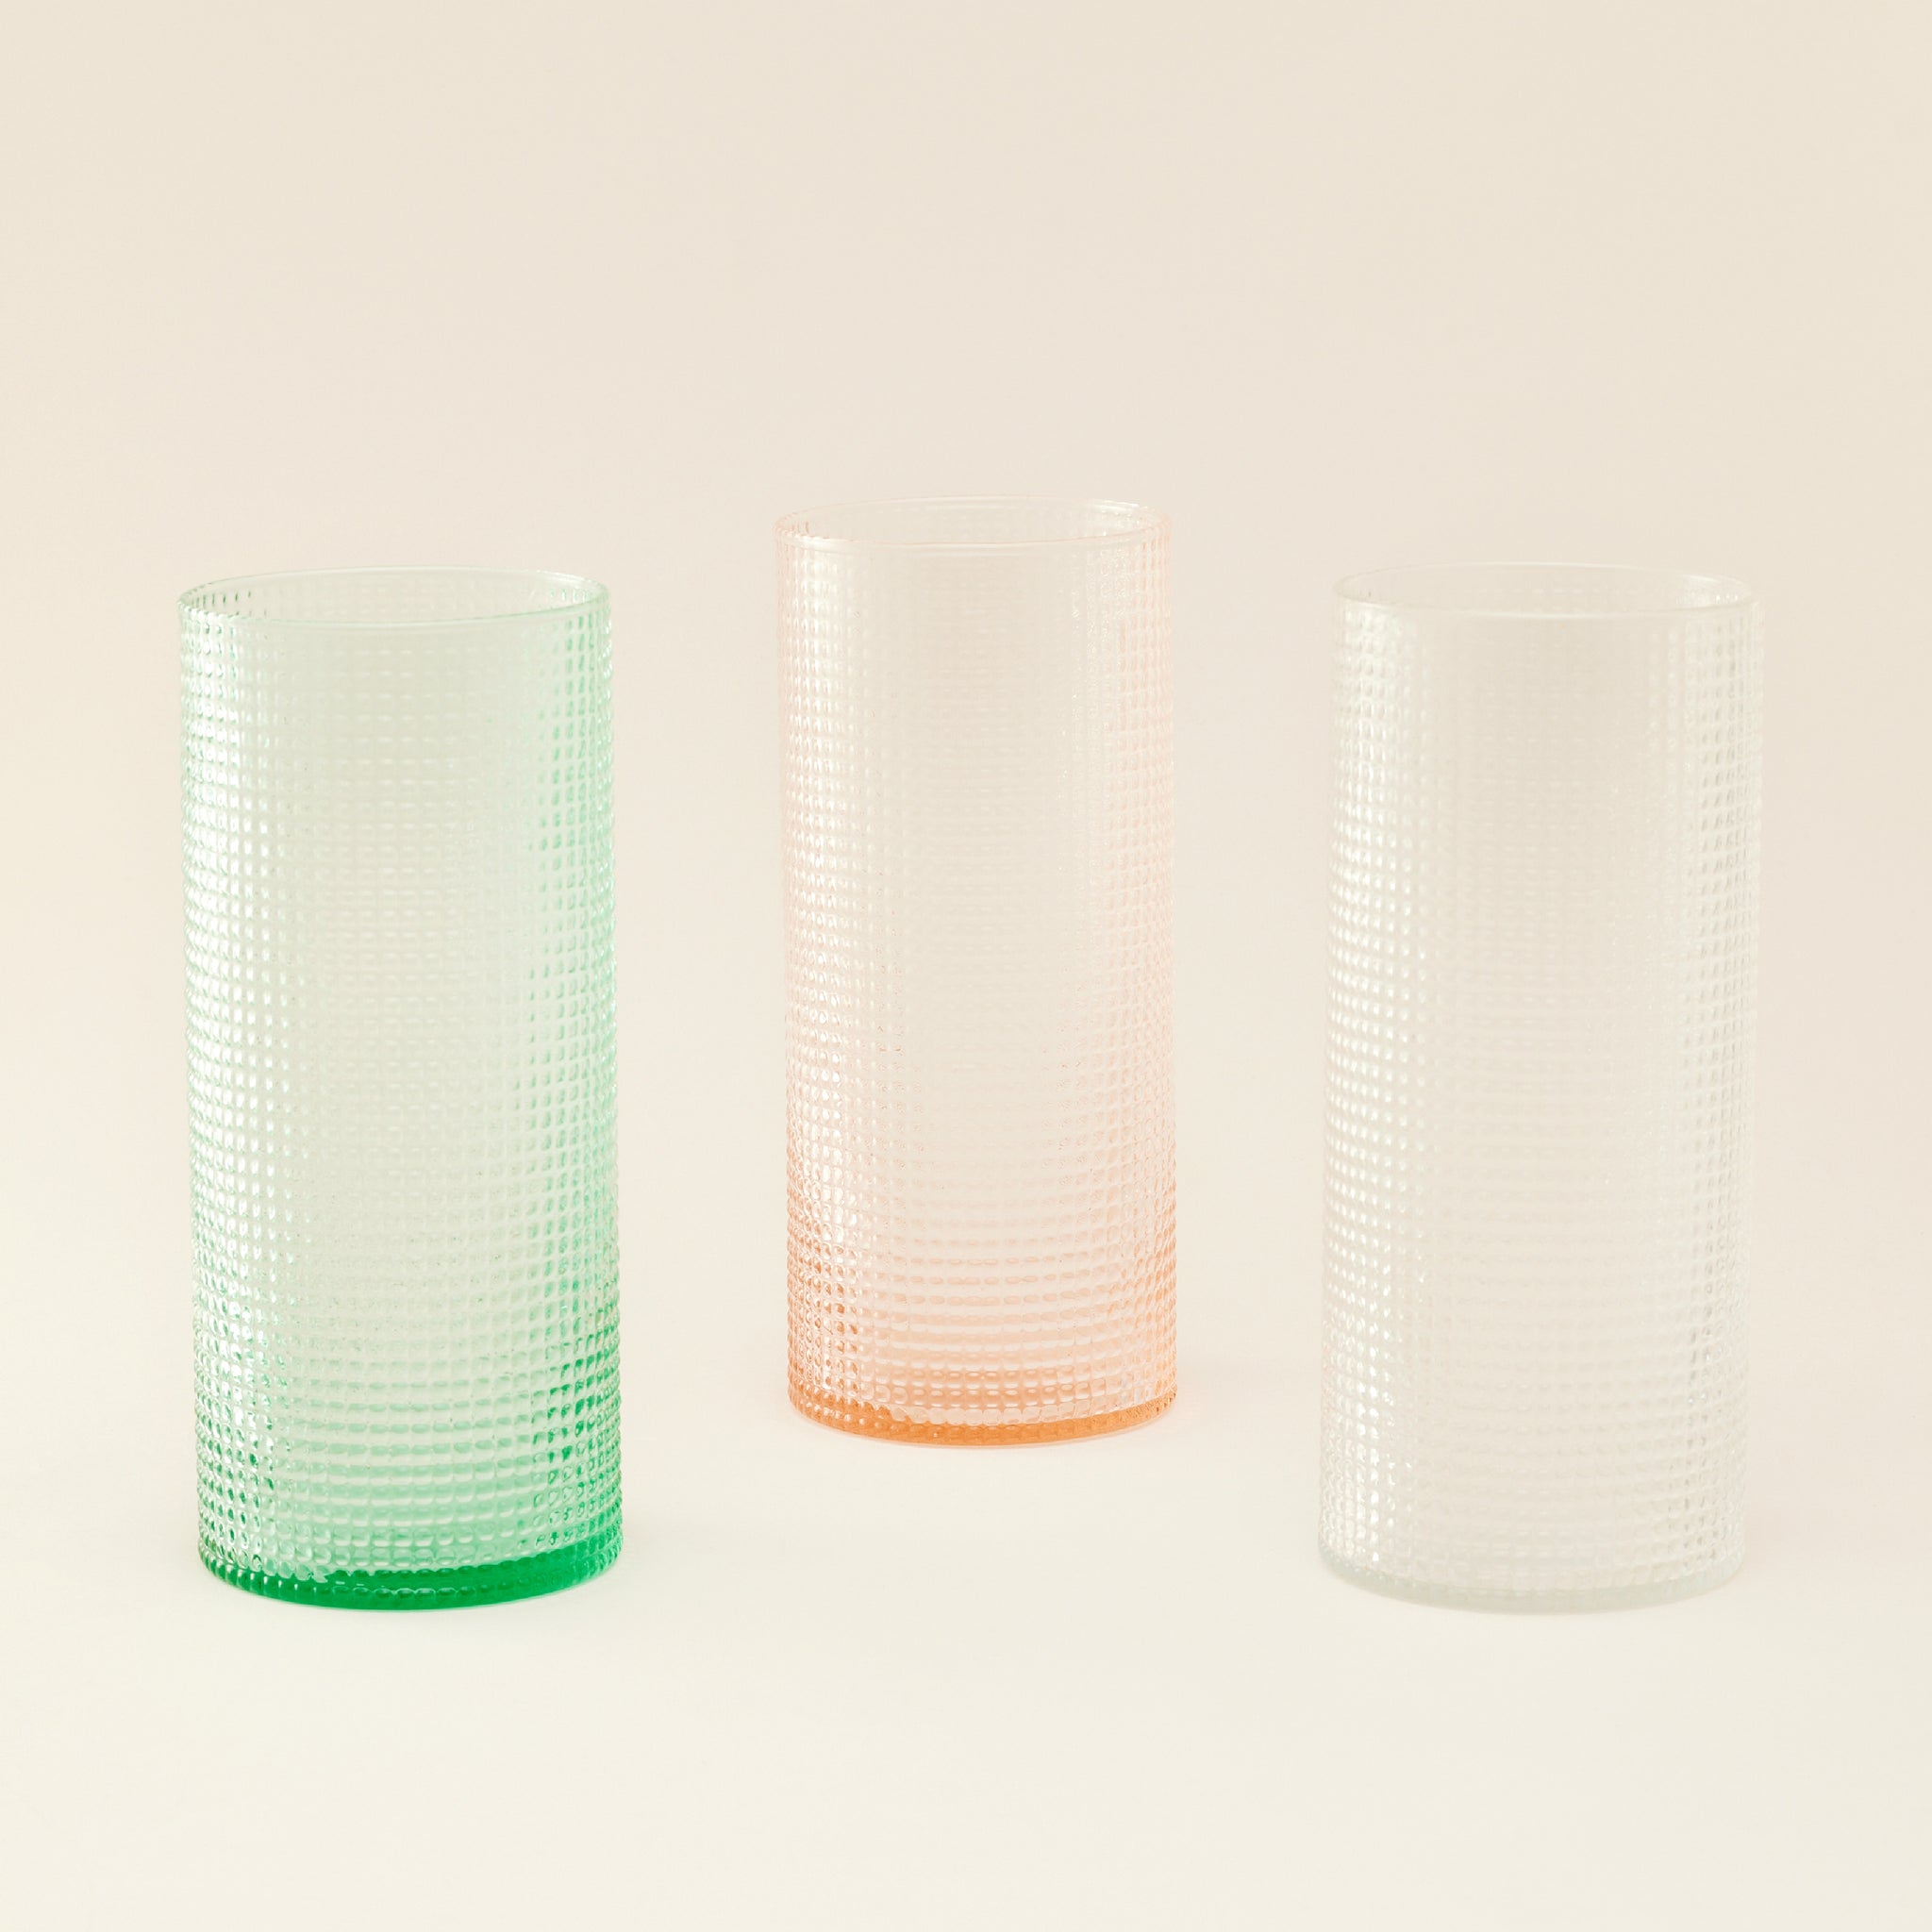 Eastern Glass Cylindrical Vase | แจกันแก้ว ทรงกระบอก